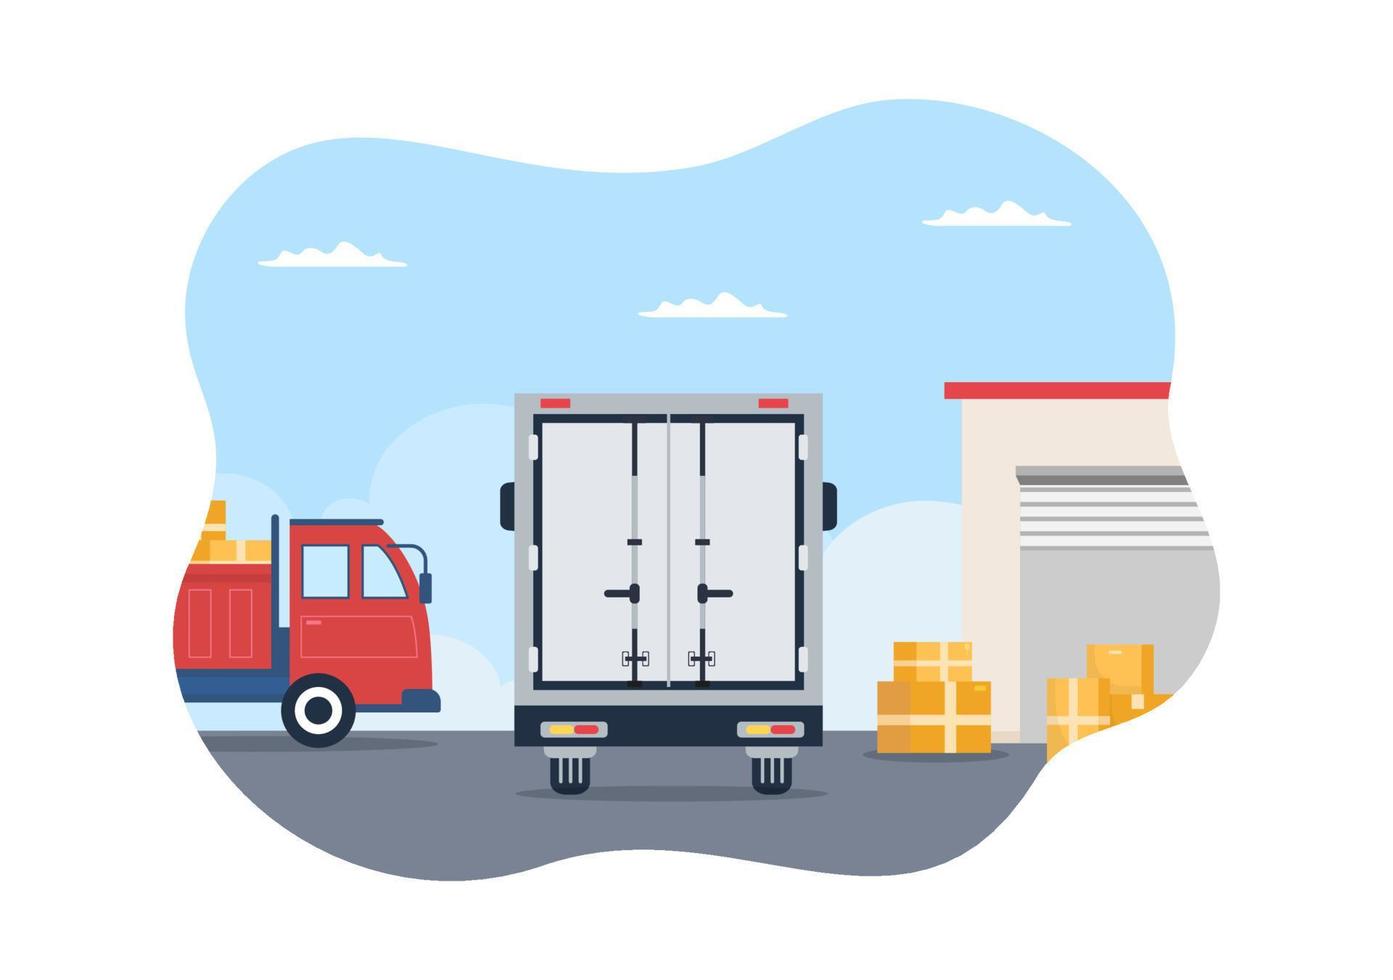 ilustração de desenho animado de transporte por caminhão com serviços de entrega de carga ou caixa de papelão enviada ao consumidor em design de estilo simples vetor